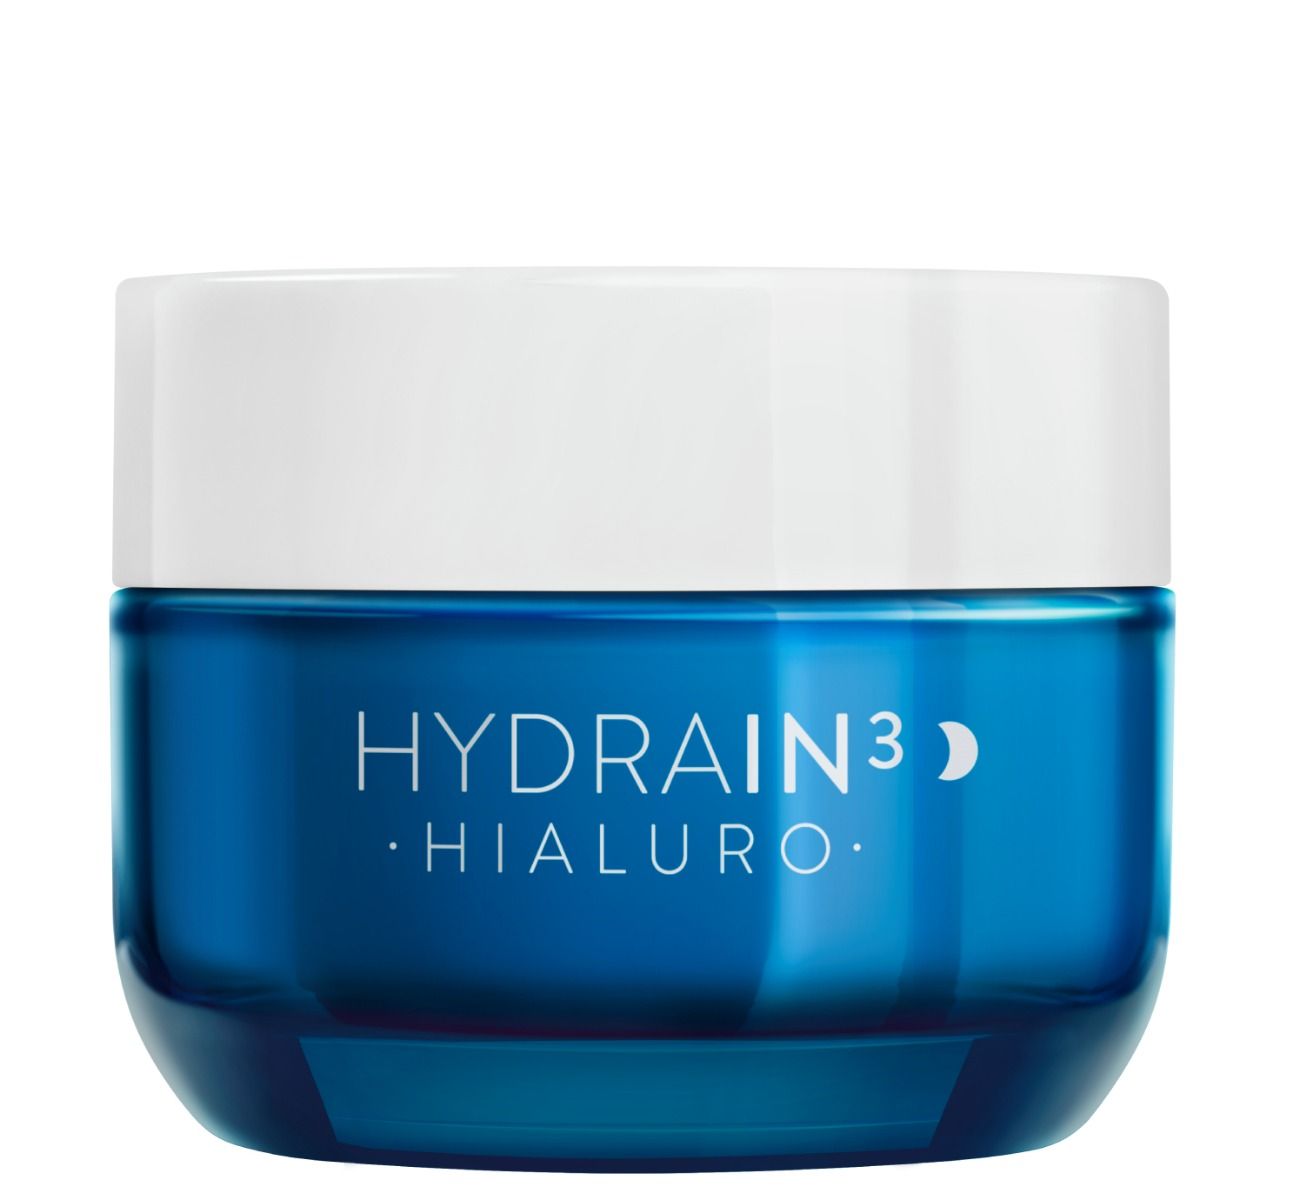 Dermedic Hydrain3 Hialuro крем для лица на ночь, 50 ml dermedic hydrain3 hialuro крем для кожи вокруг глаз 15 г